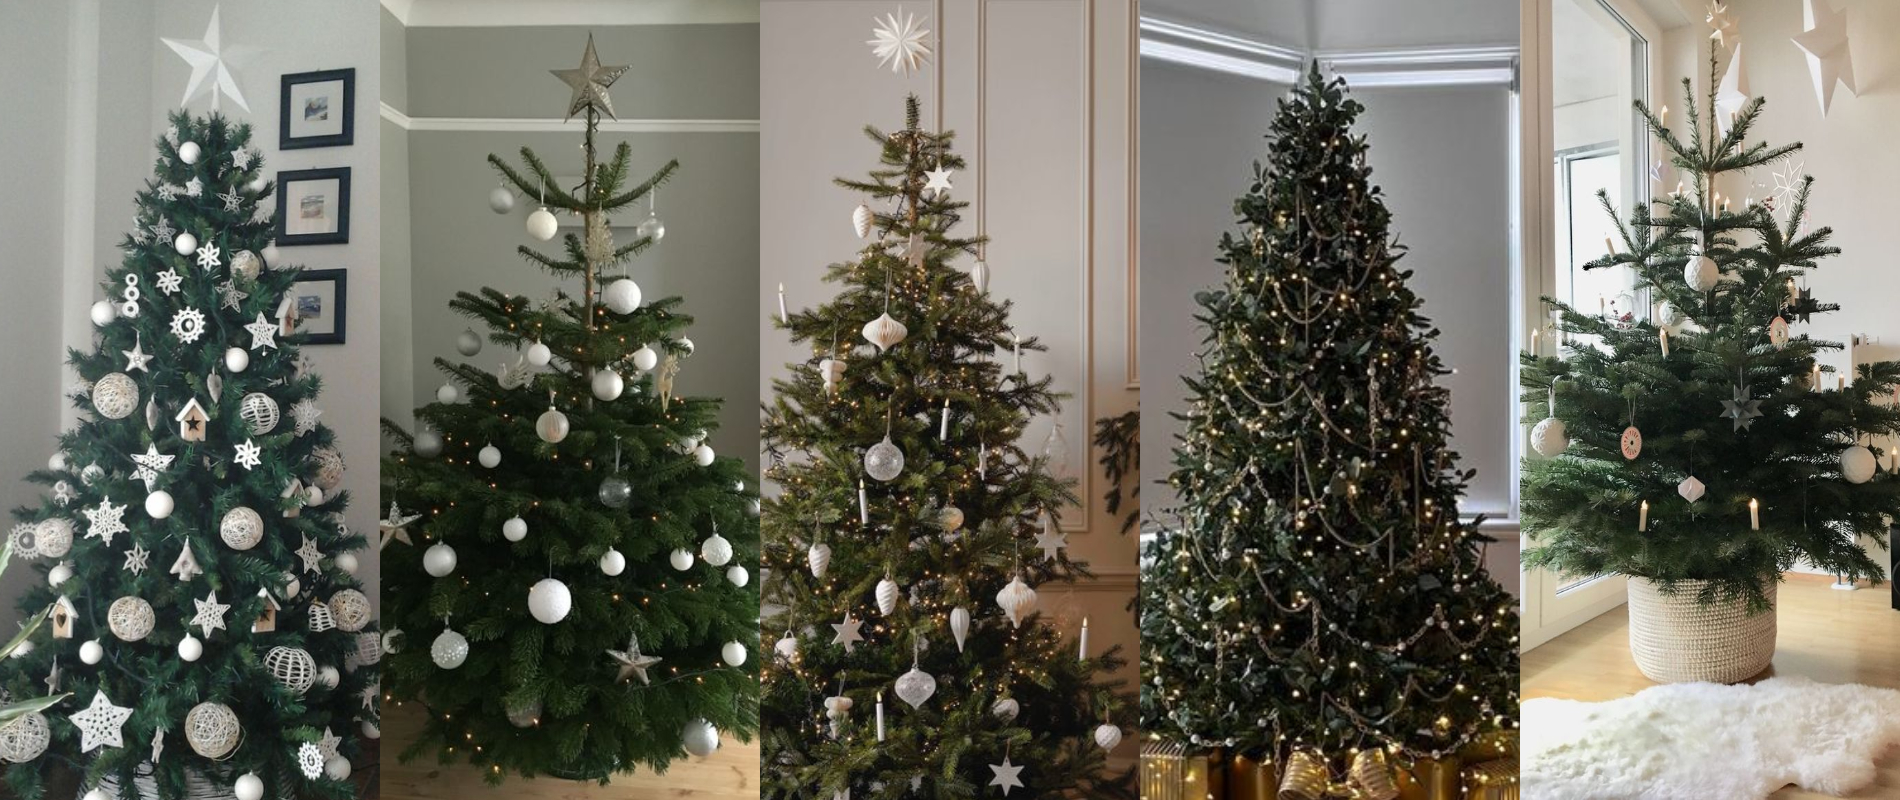 Decoración navideña minimalista. Decoración de árbol de navidad.